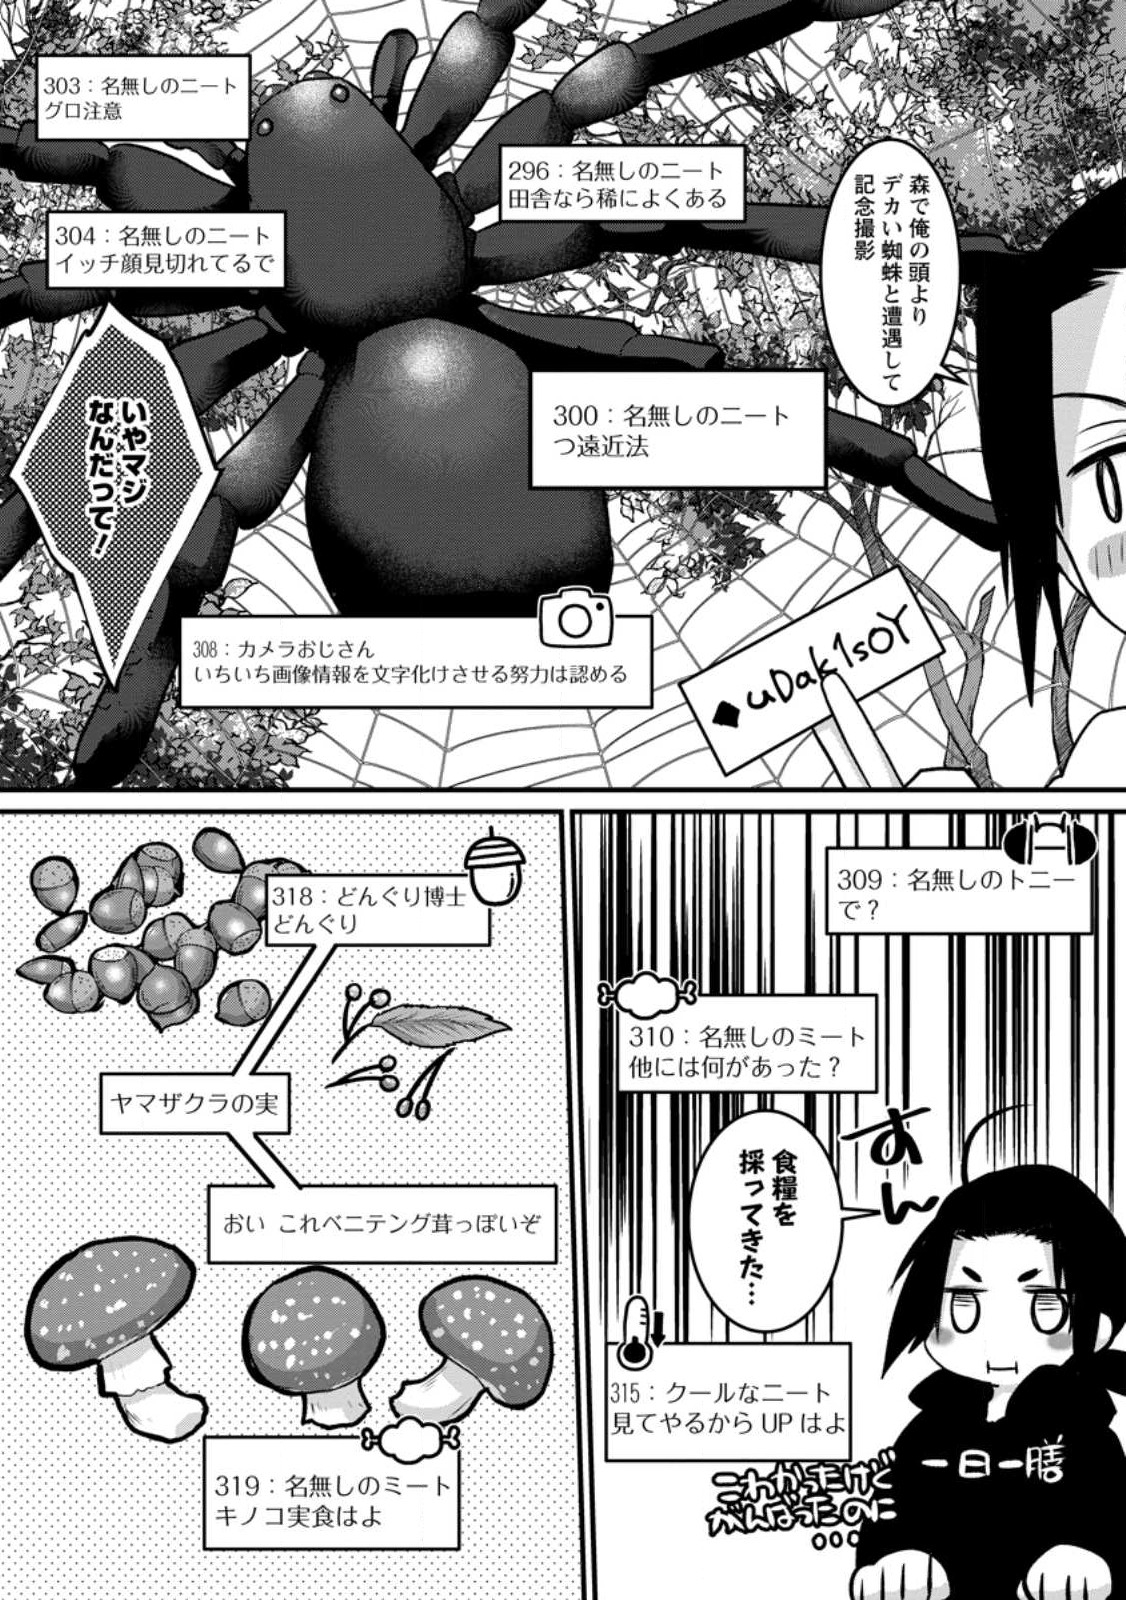 10-nen Goshi no HikiNEET wo Yamete Gaishutsu shitara Jitakugo to Isekai ni Tenishiteta - Chapter 1.3 - Page 3